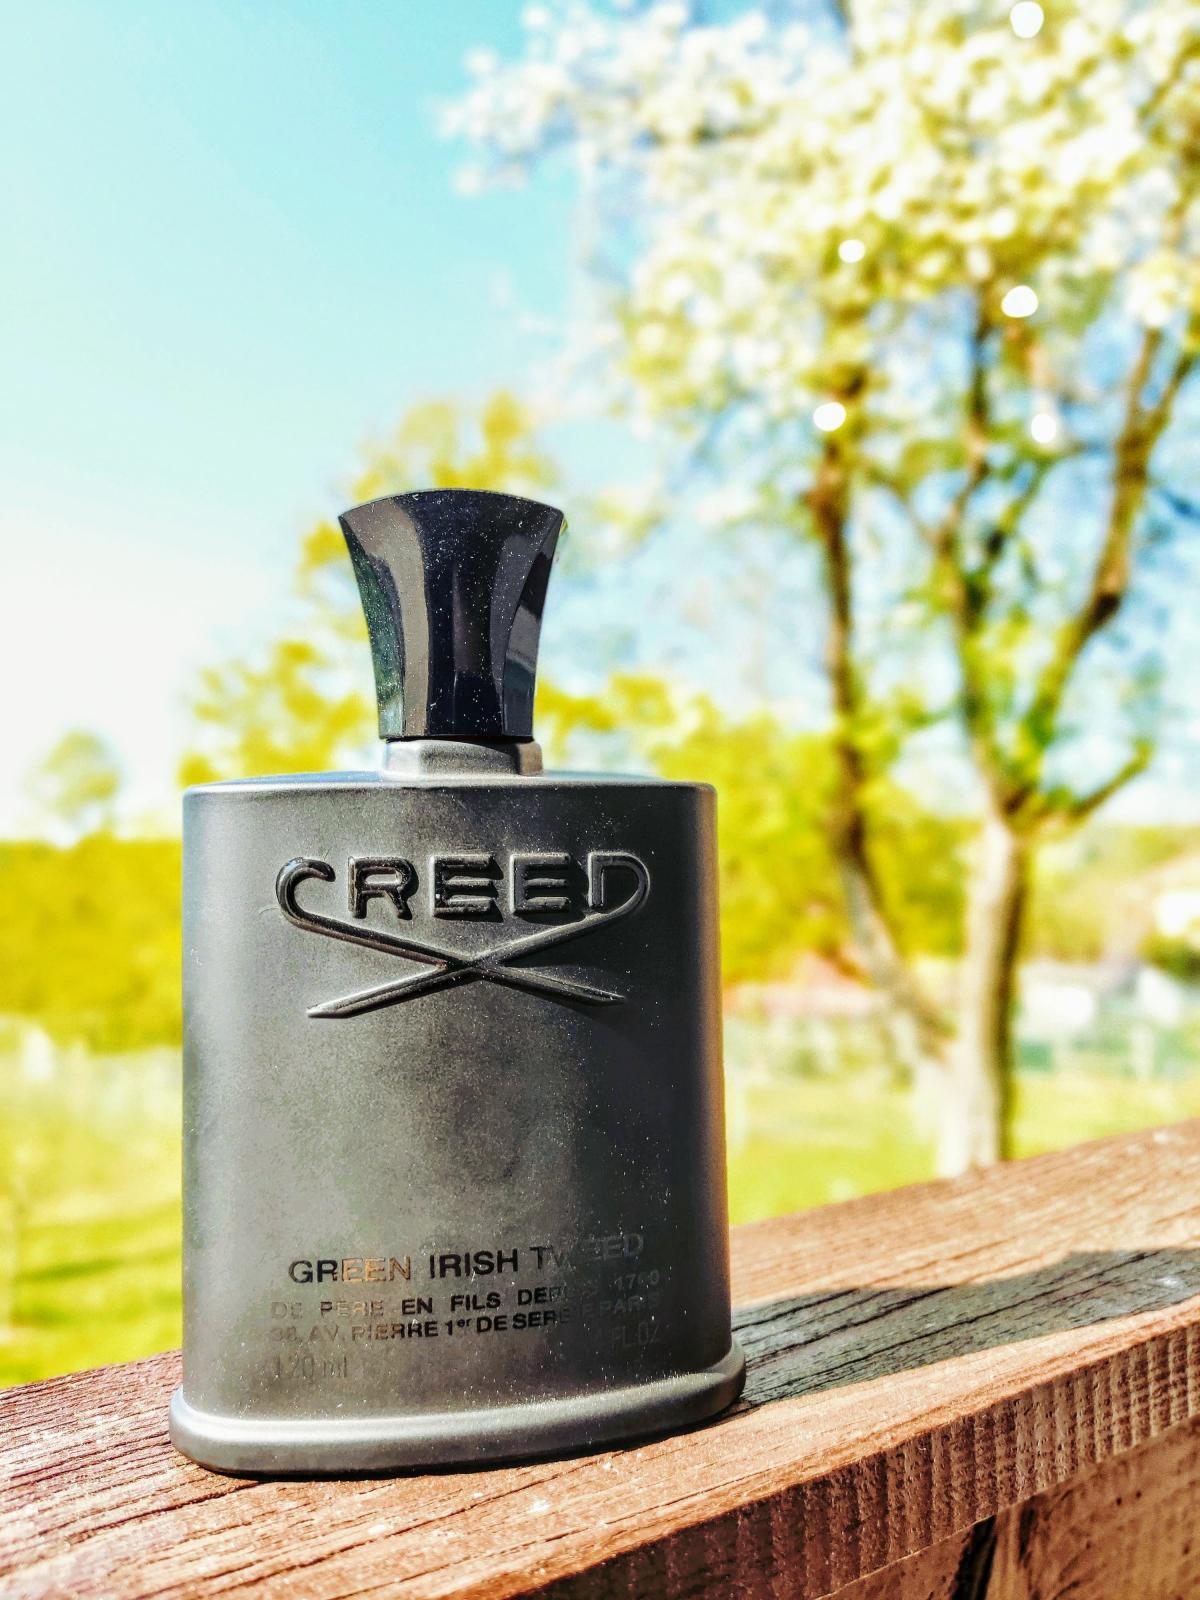 Green Irish Tweed Creed zapach - to perfumy dla mężczyzn 1985